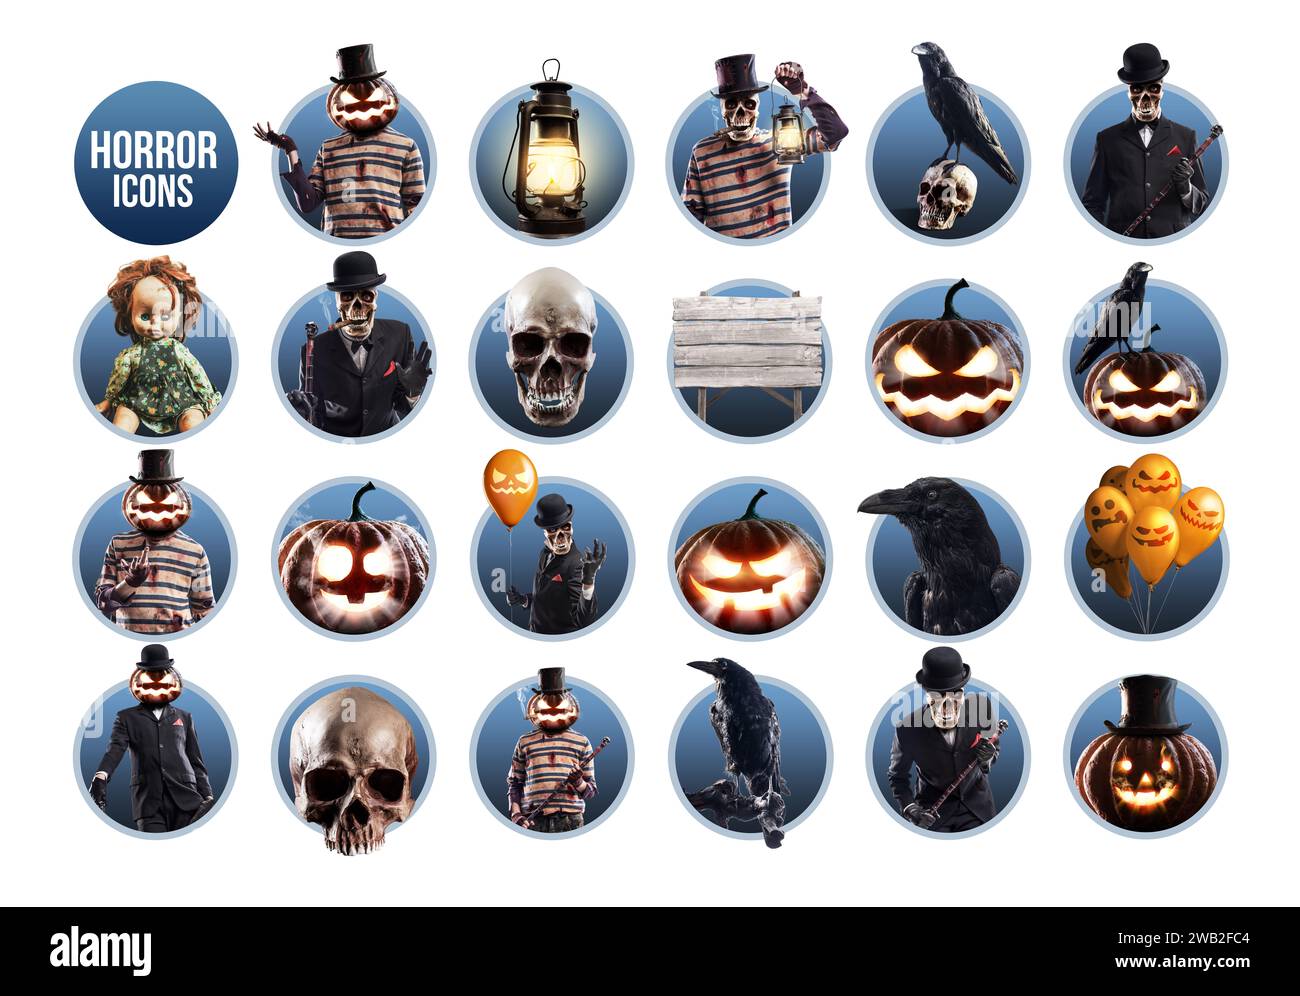 Sammlung gruseliger Halloween-Horrorfiguren und -Objekte, Ikonensatz Stockfoto